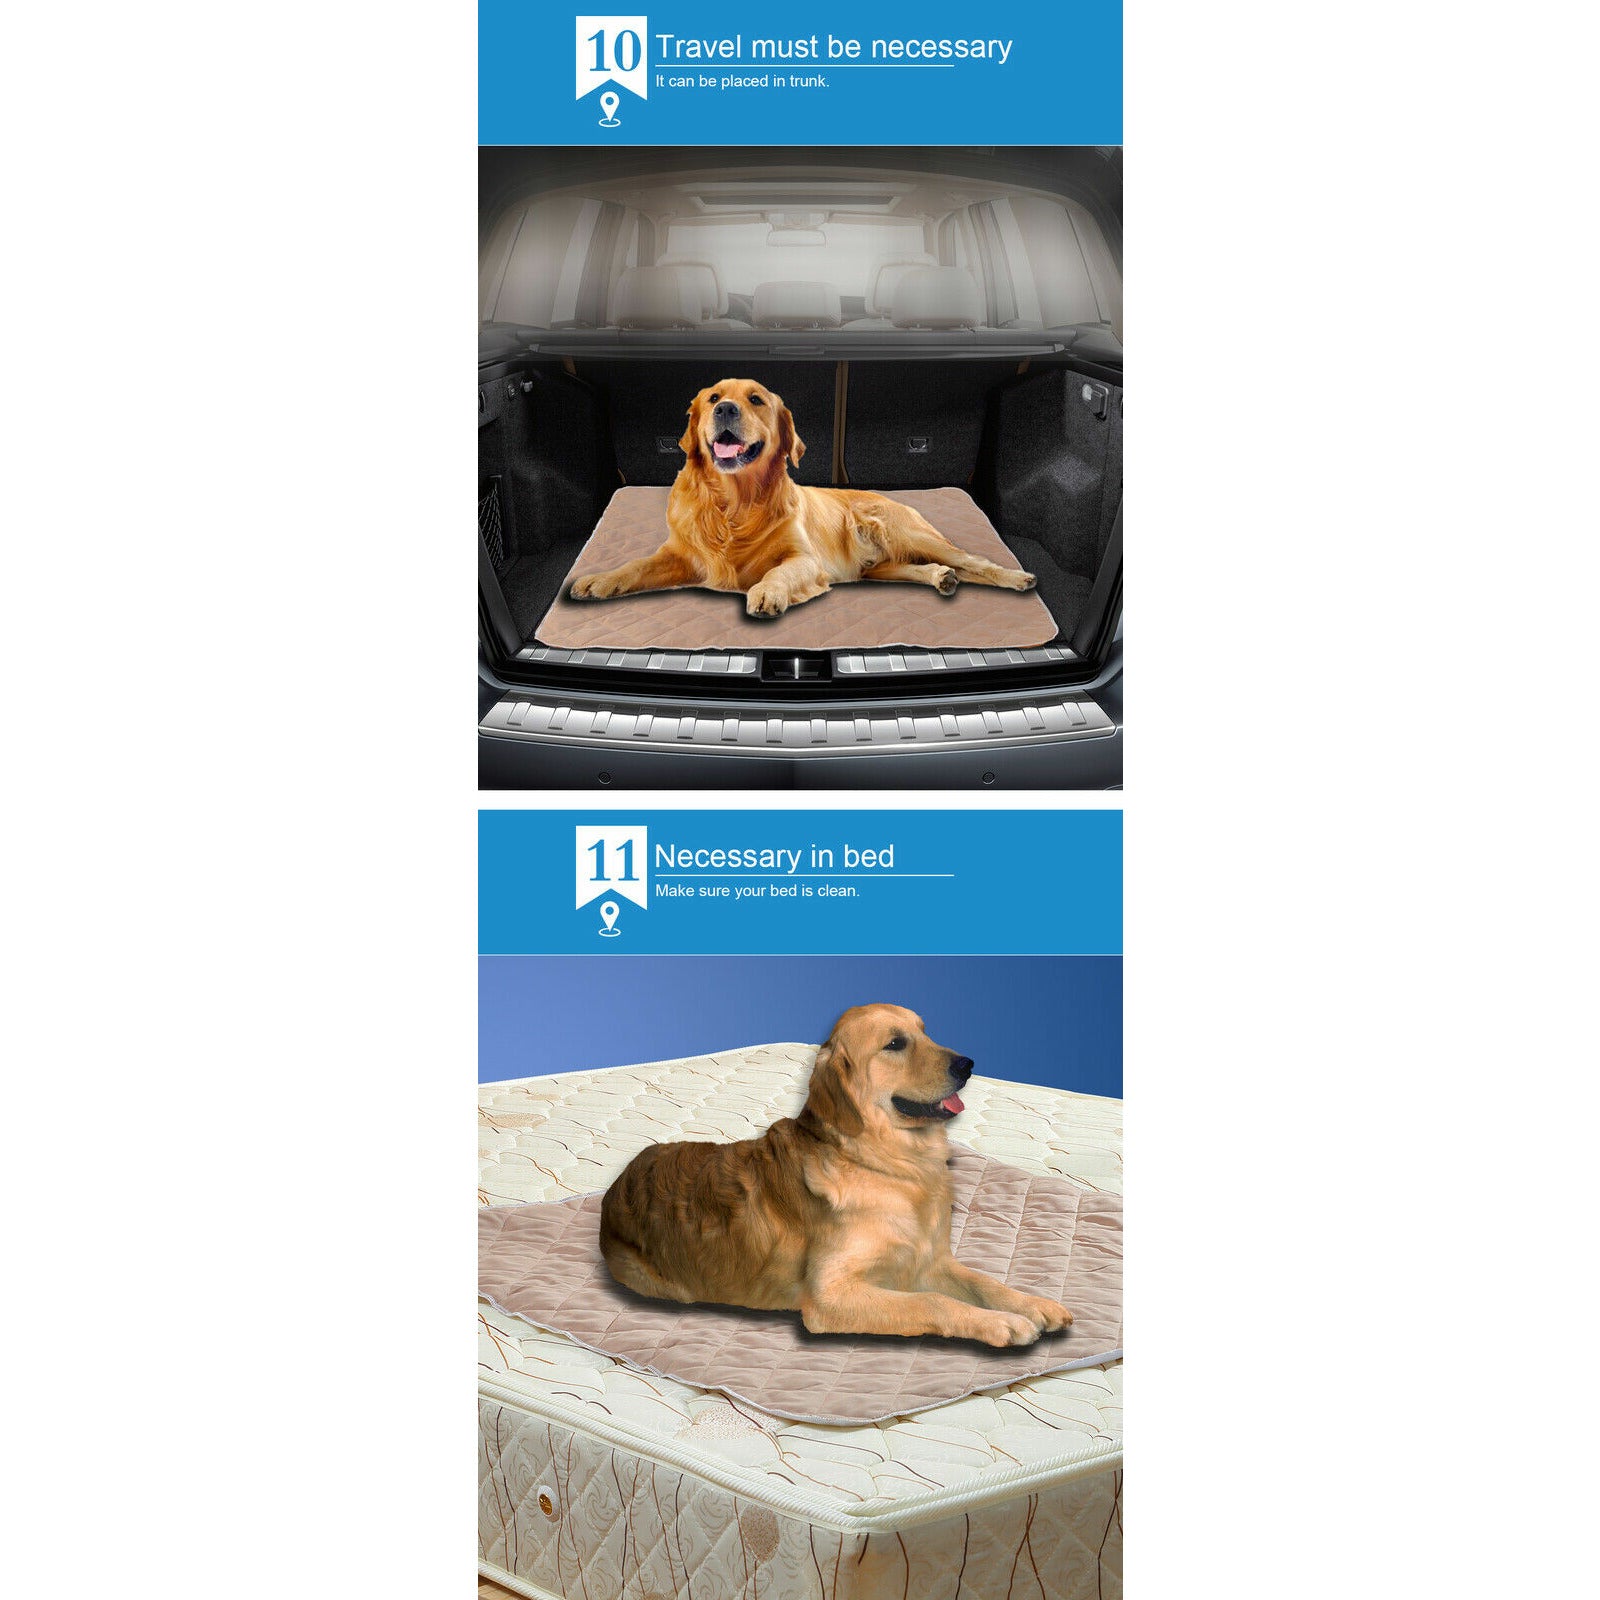 PaWz 2 Pcs 120x120 cm Reusable Waterproof Pet Puppy Toilet Training Pads